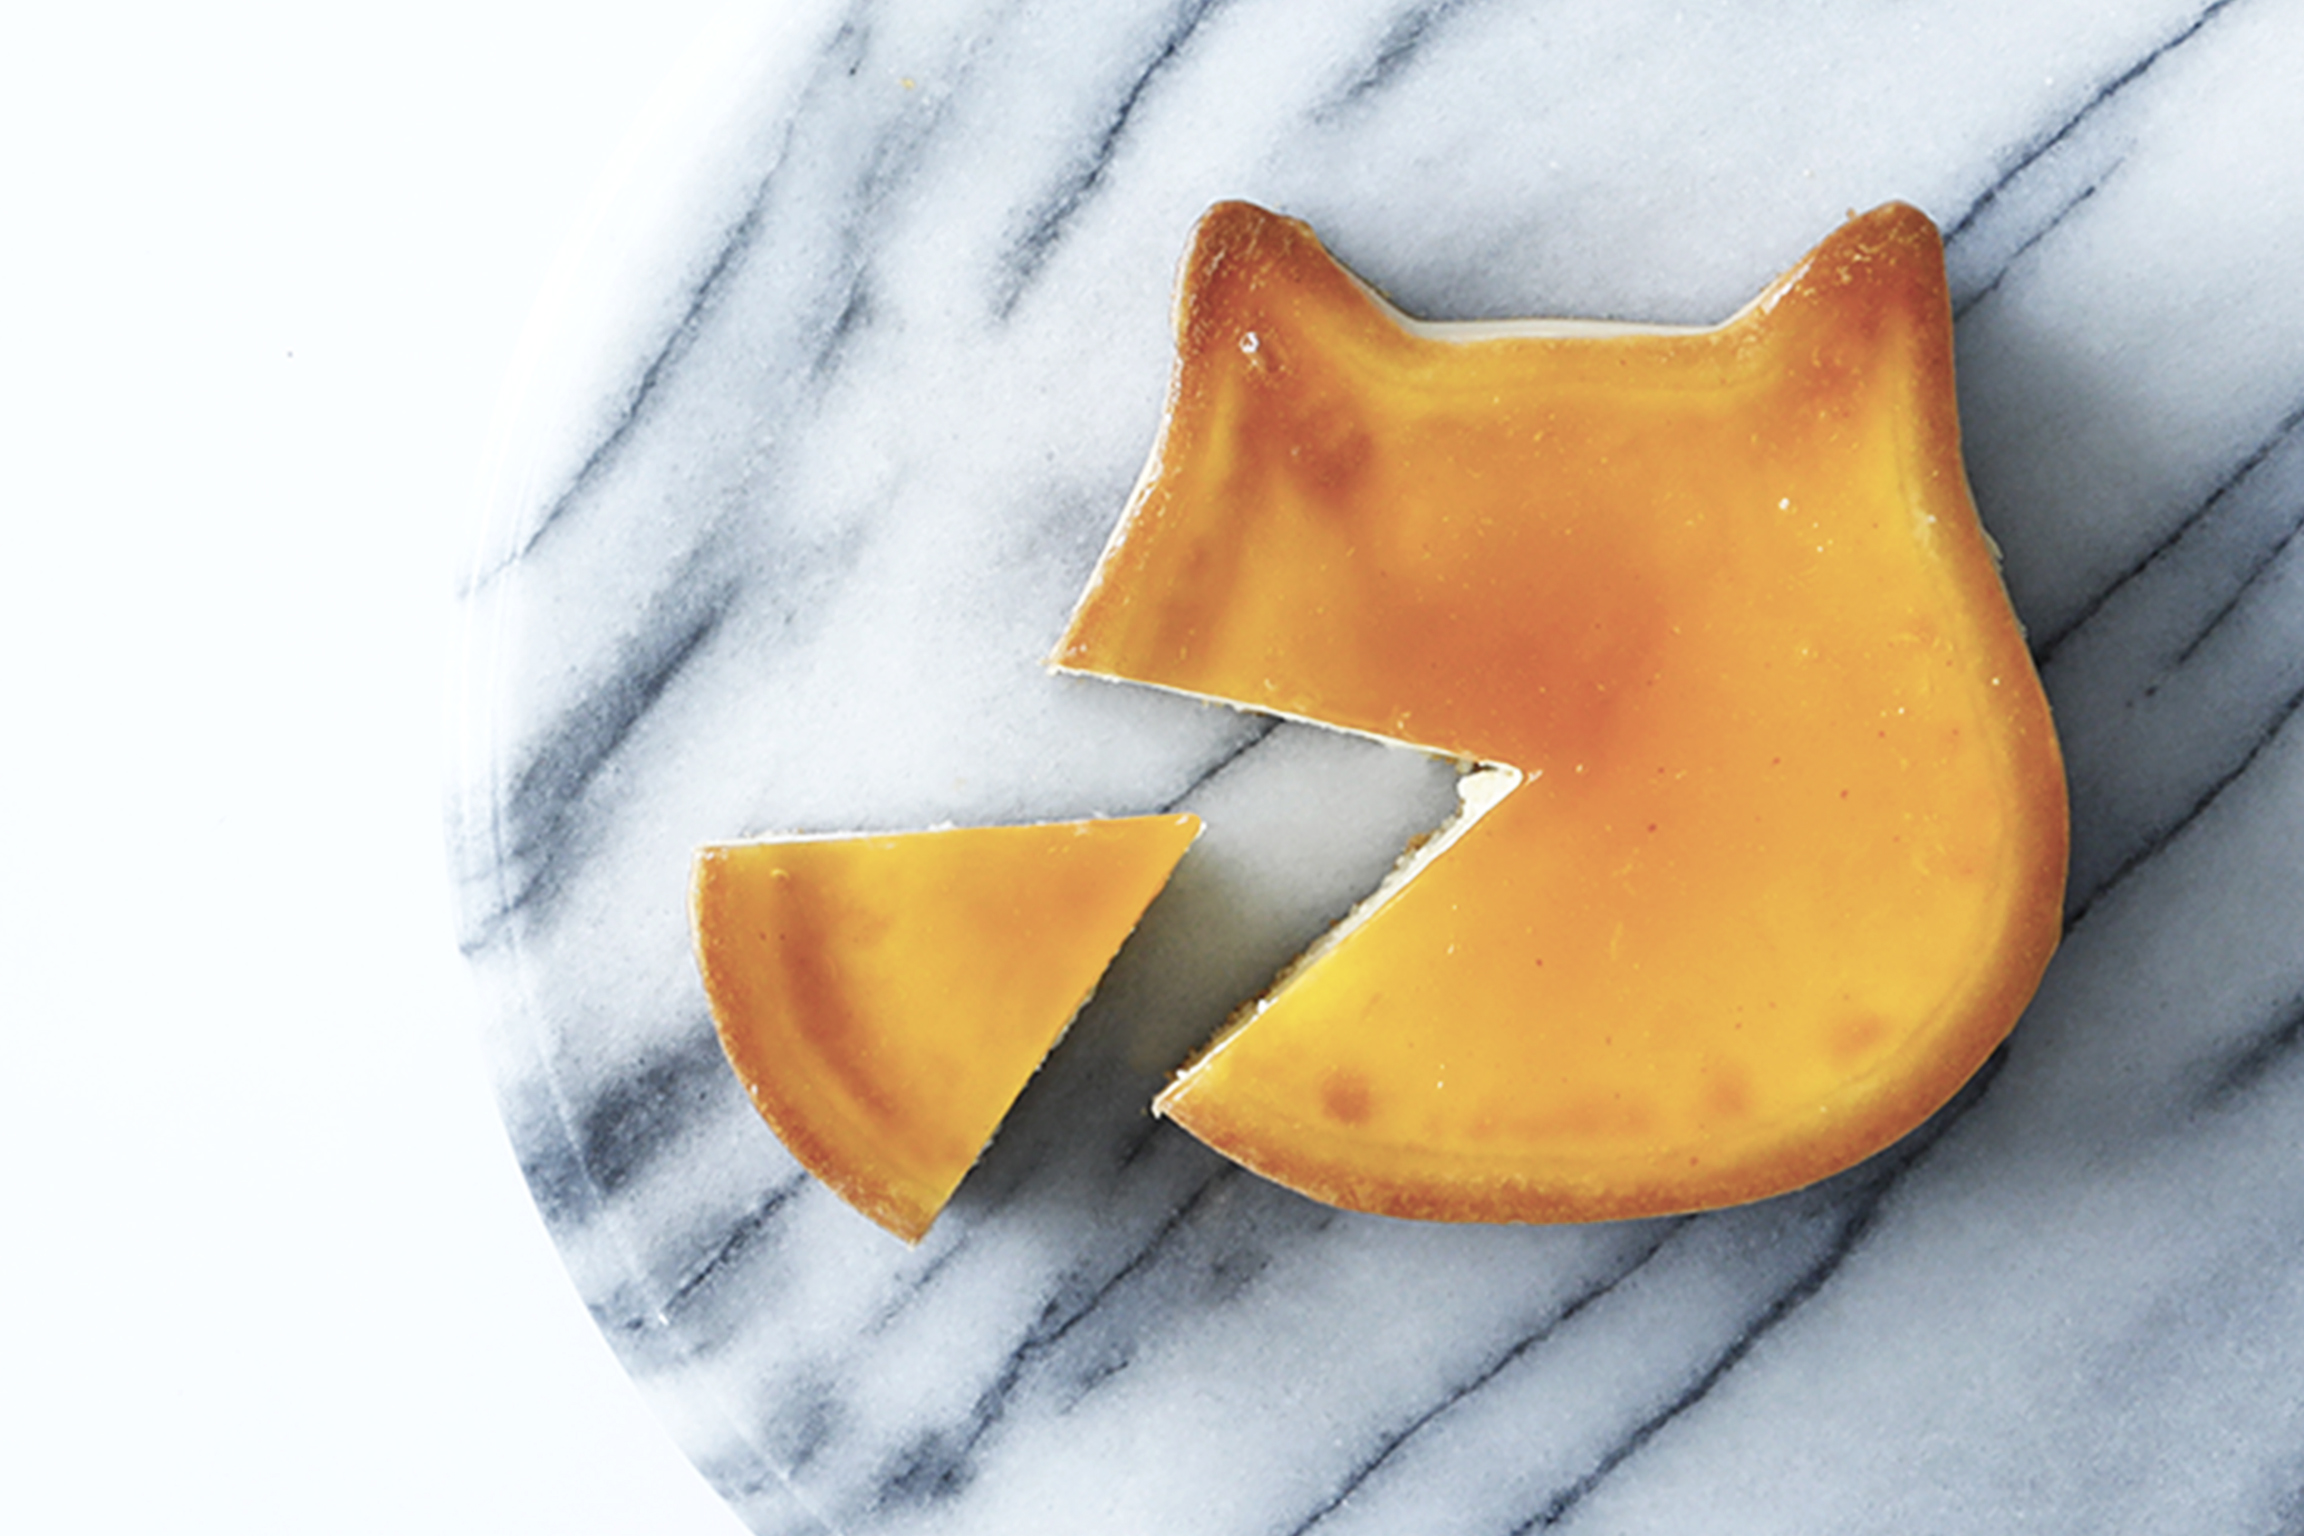 新規オープン なめらかプリン でおなじみの Pastel パステル とねこの形のチーズケーキ専門店 ねこねこチーズケーキ が愛知県 埼玉県にオープン 株式会社オールハーツ カンパニーのプレスリリース